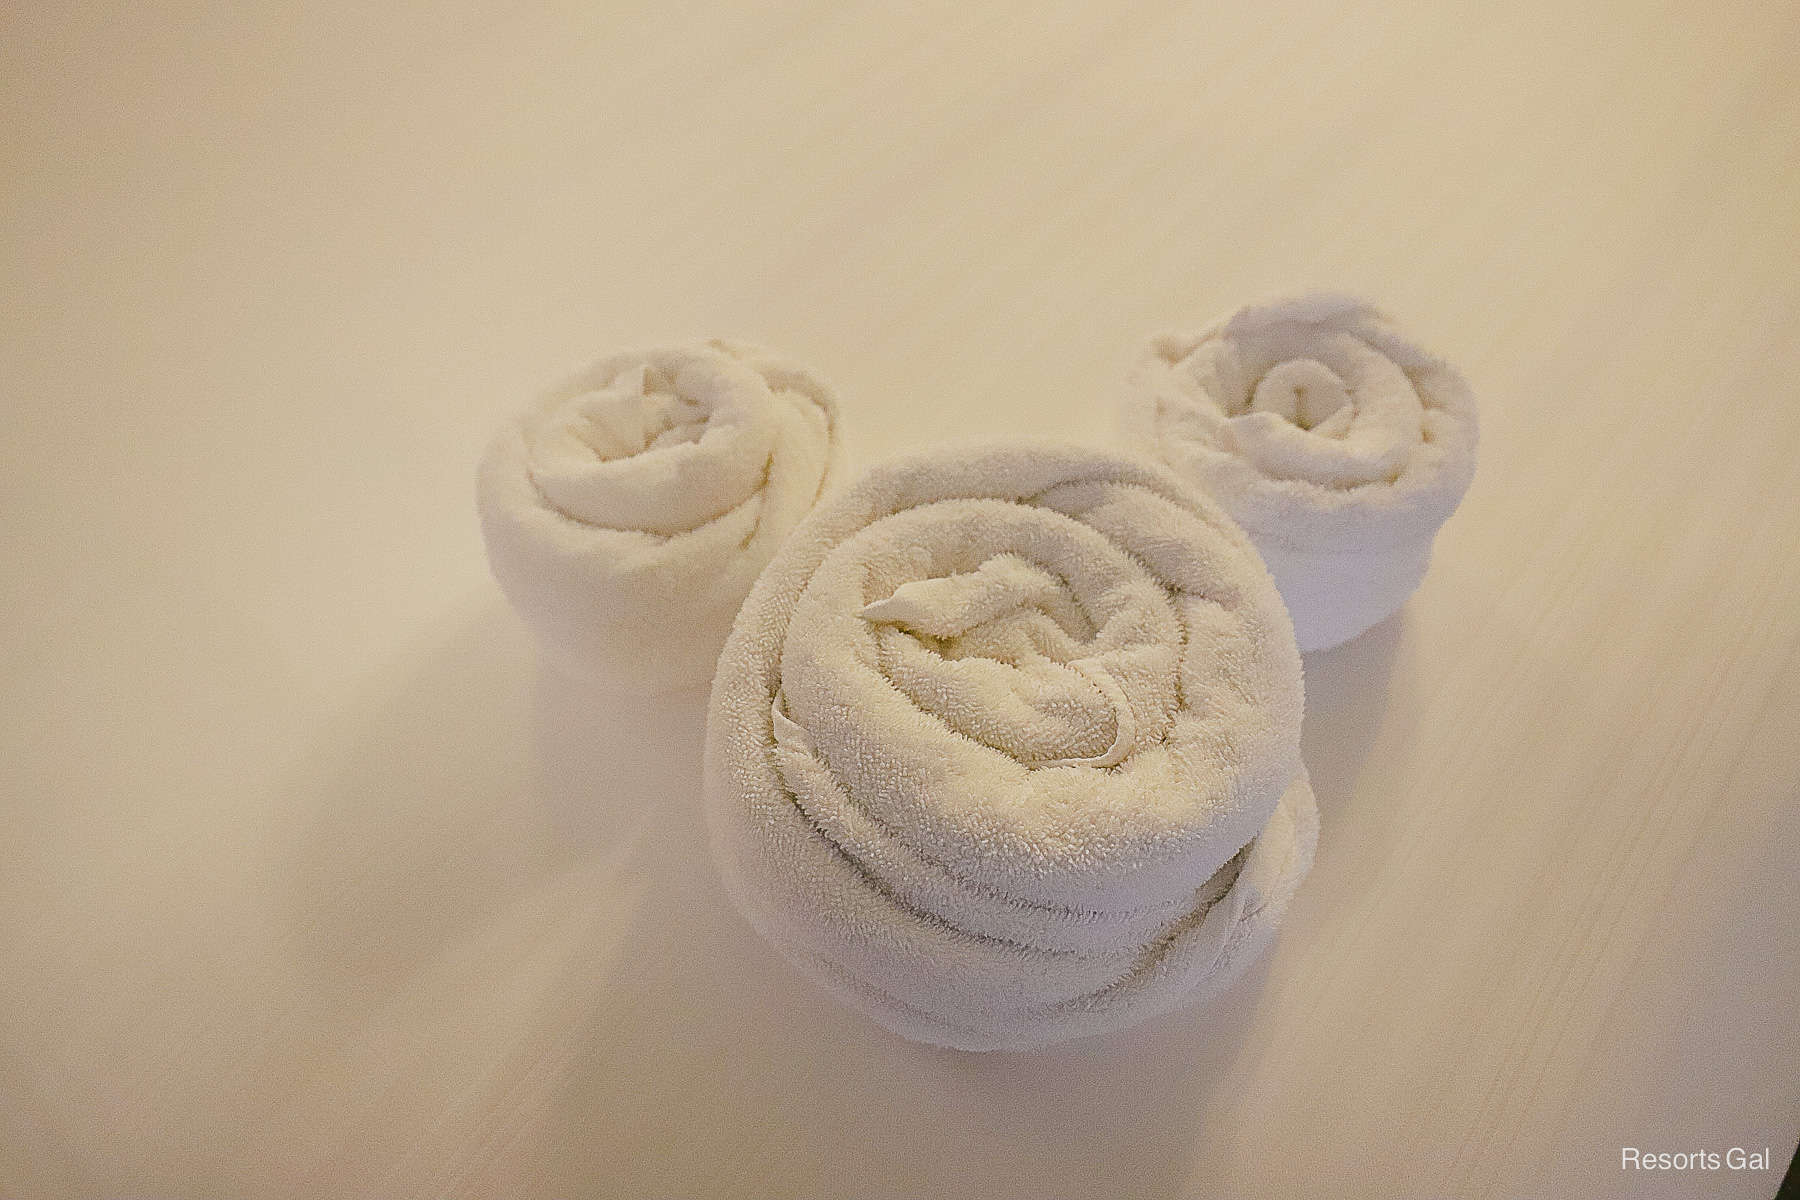 Towel shaped like a Mickey Mouse 